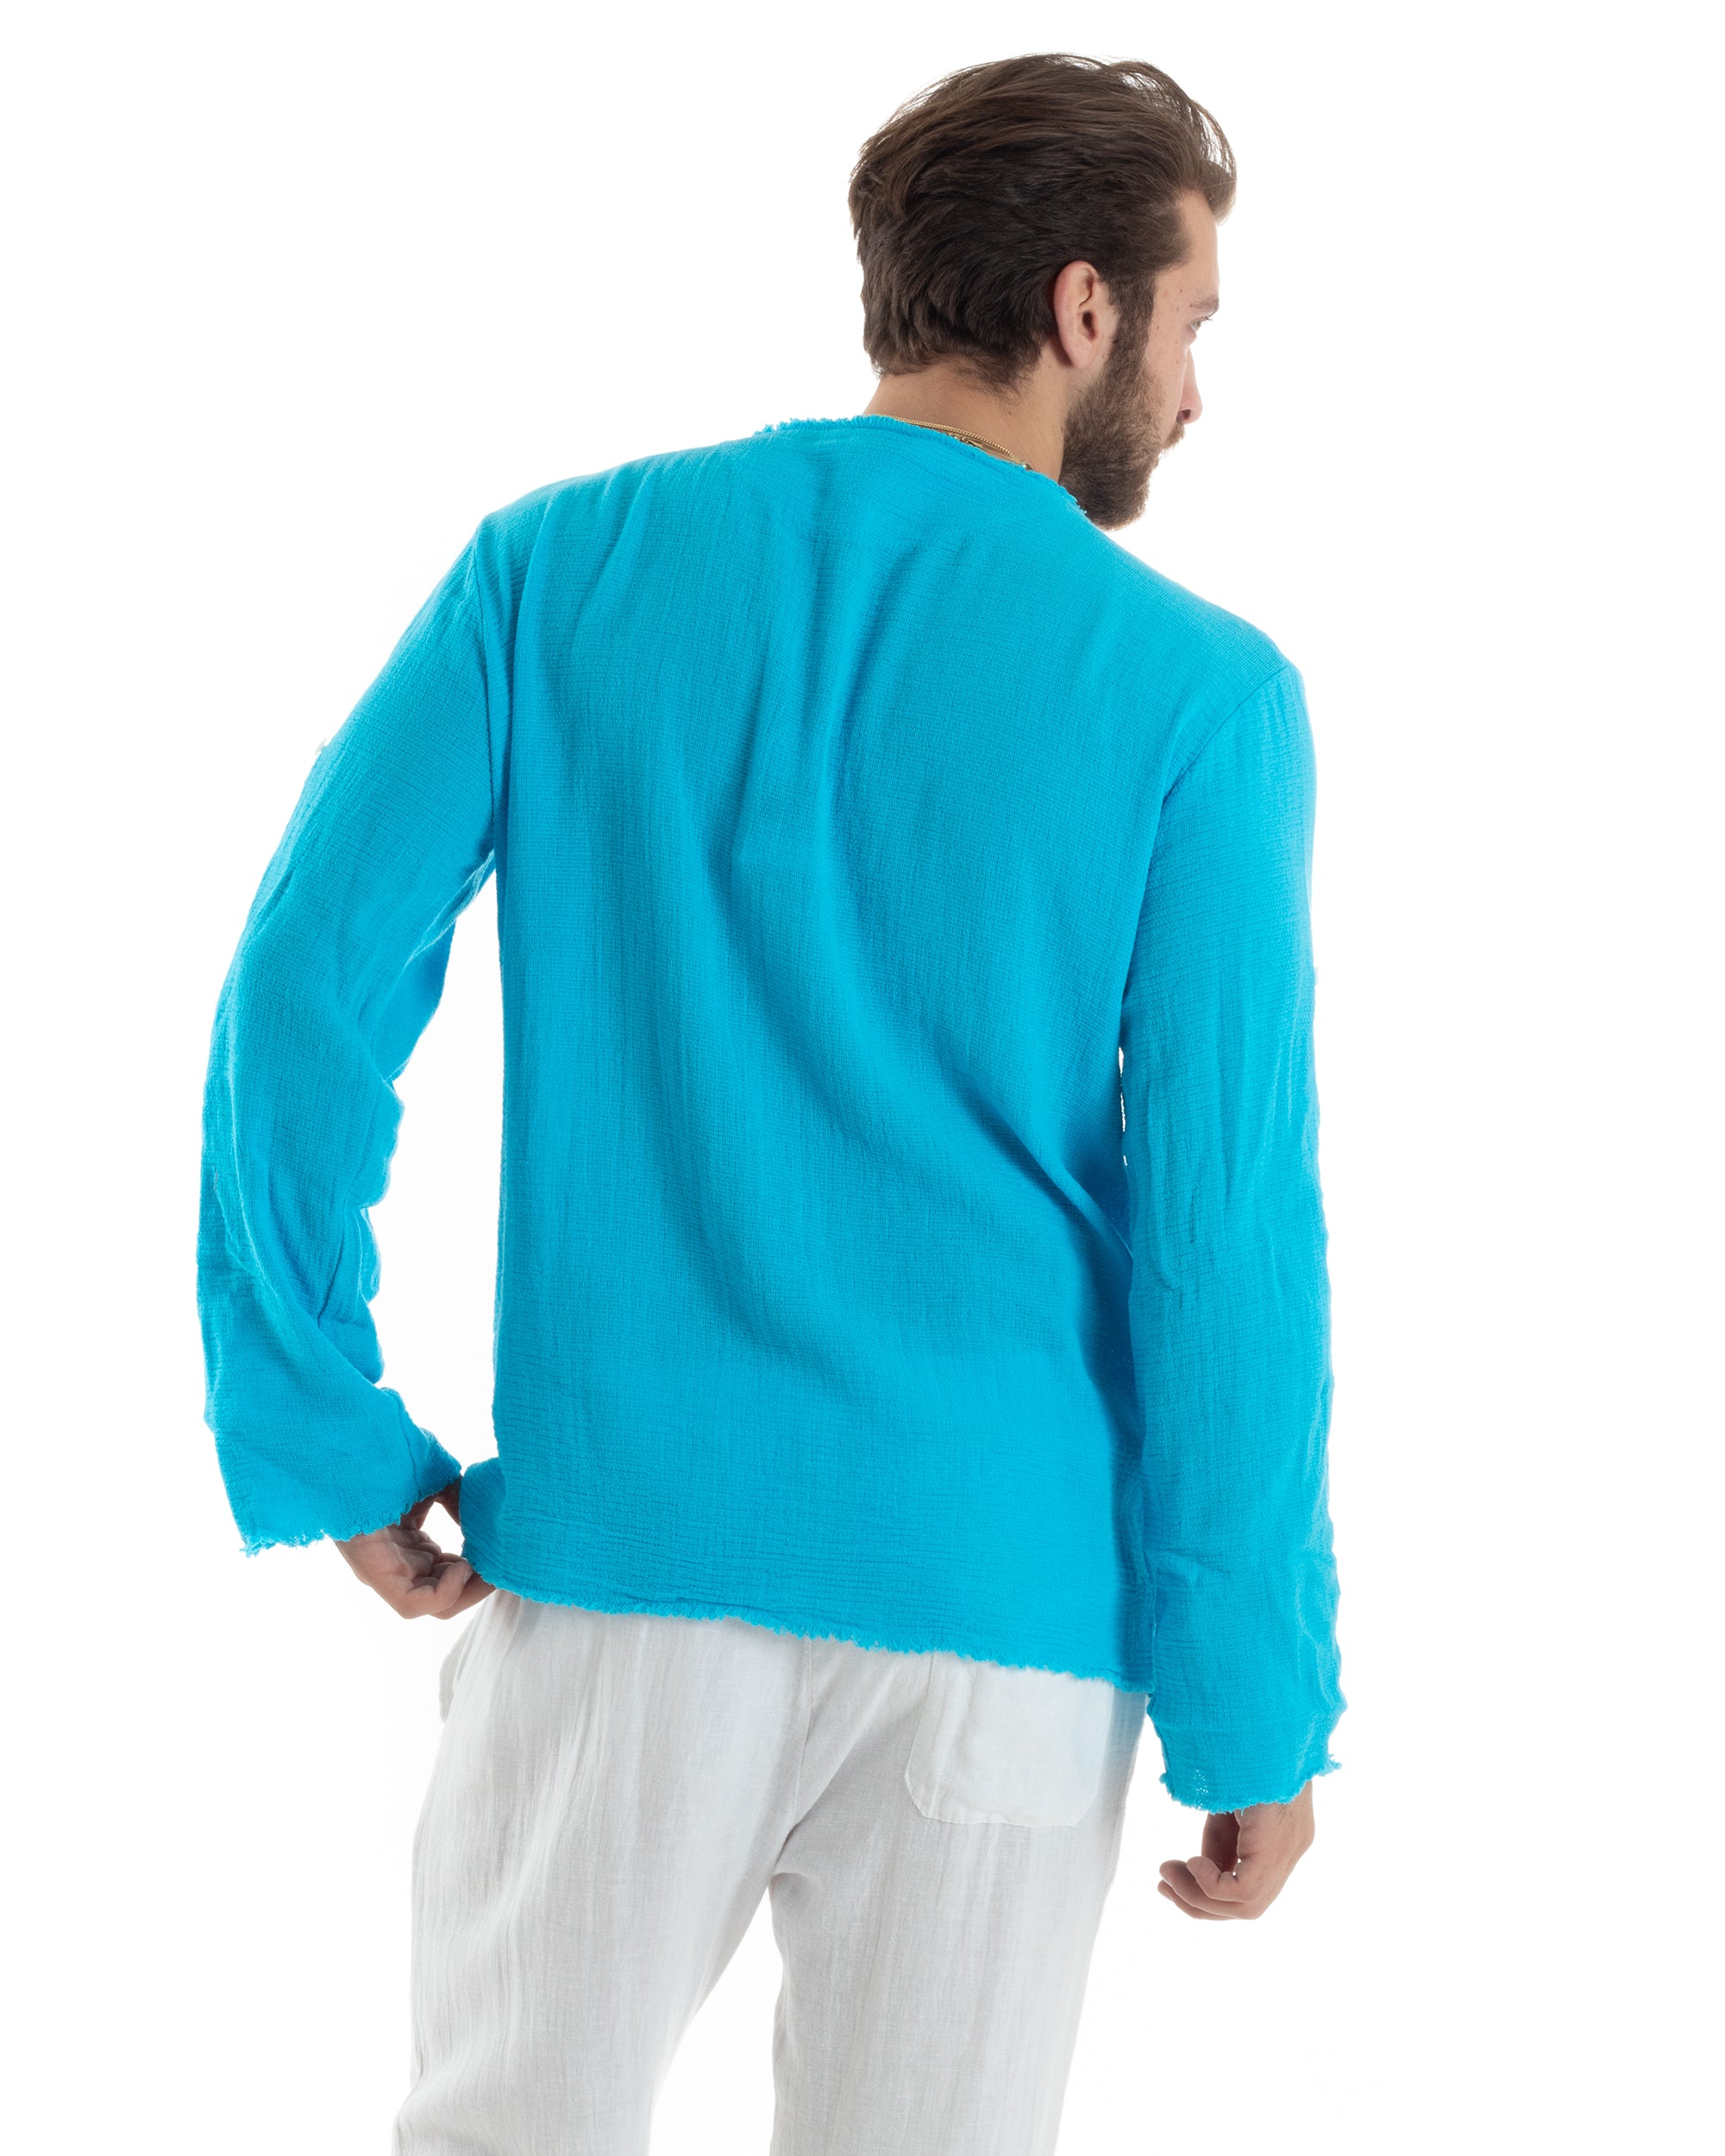 Men's Shirt V-Neck Long Sleeve Regular Fit Cotton Linen Frayed Beige GIOSAL-C2405A